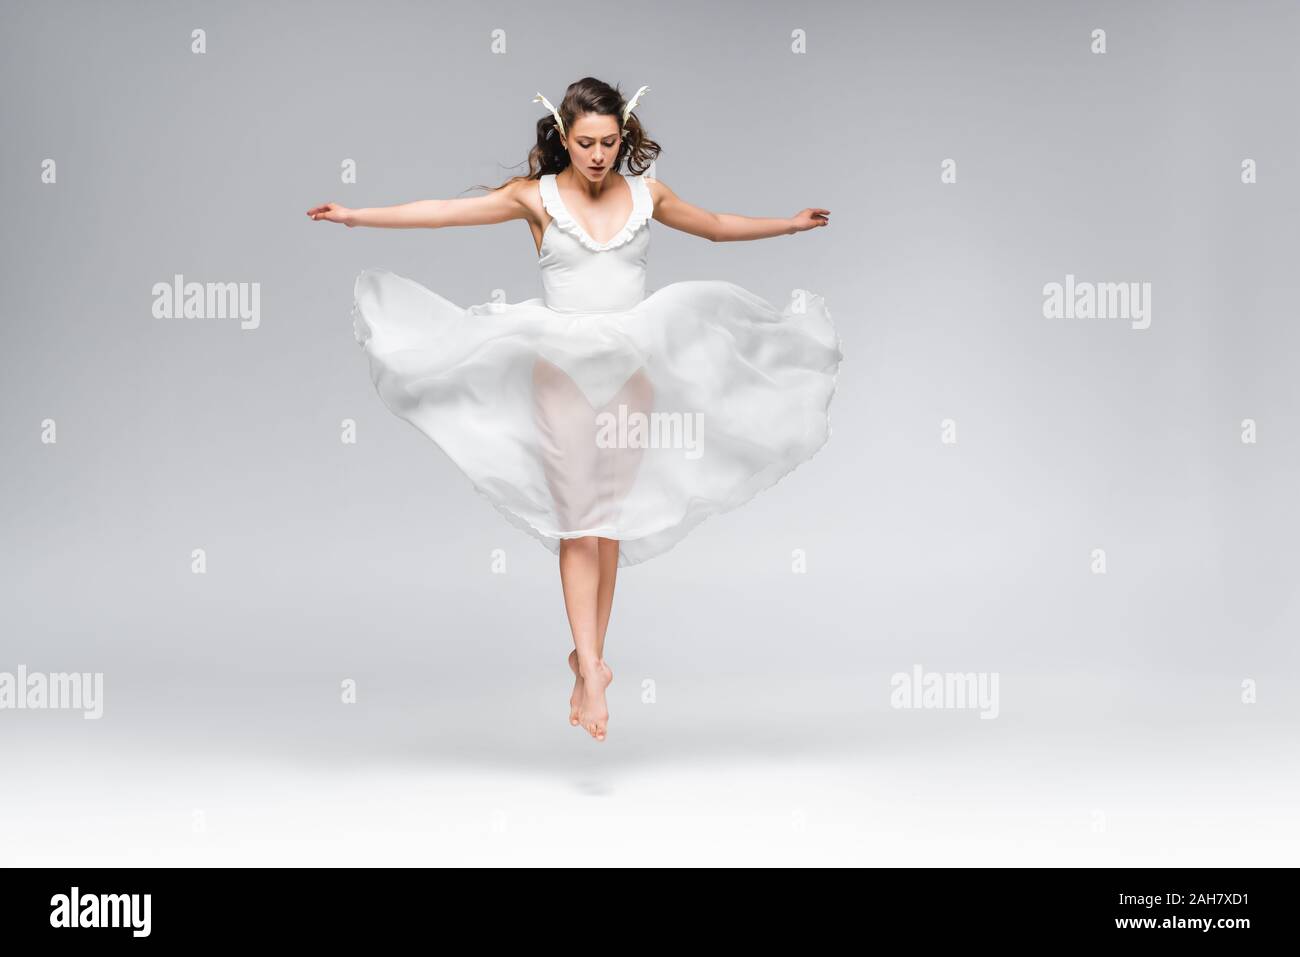 Она танцует в белом платье смотрит тайно. Танцовщица в белом платье. Балерина в белом платье. Танцовщица на сером фоне. Белое танцевальное платье.